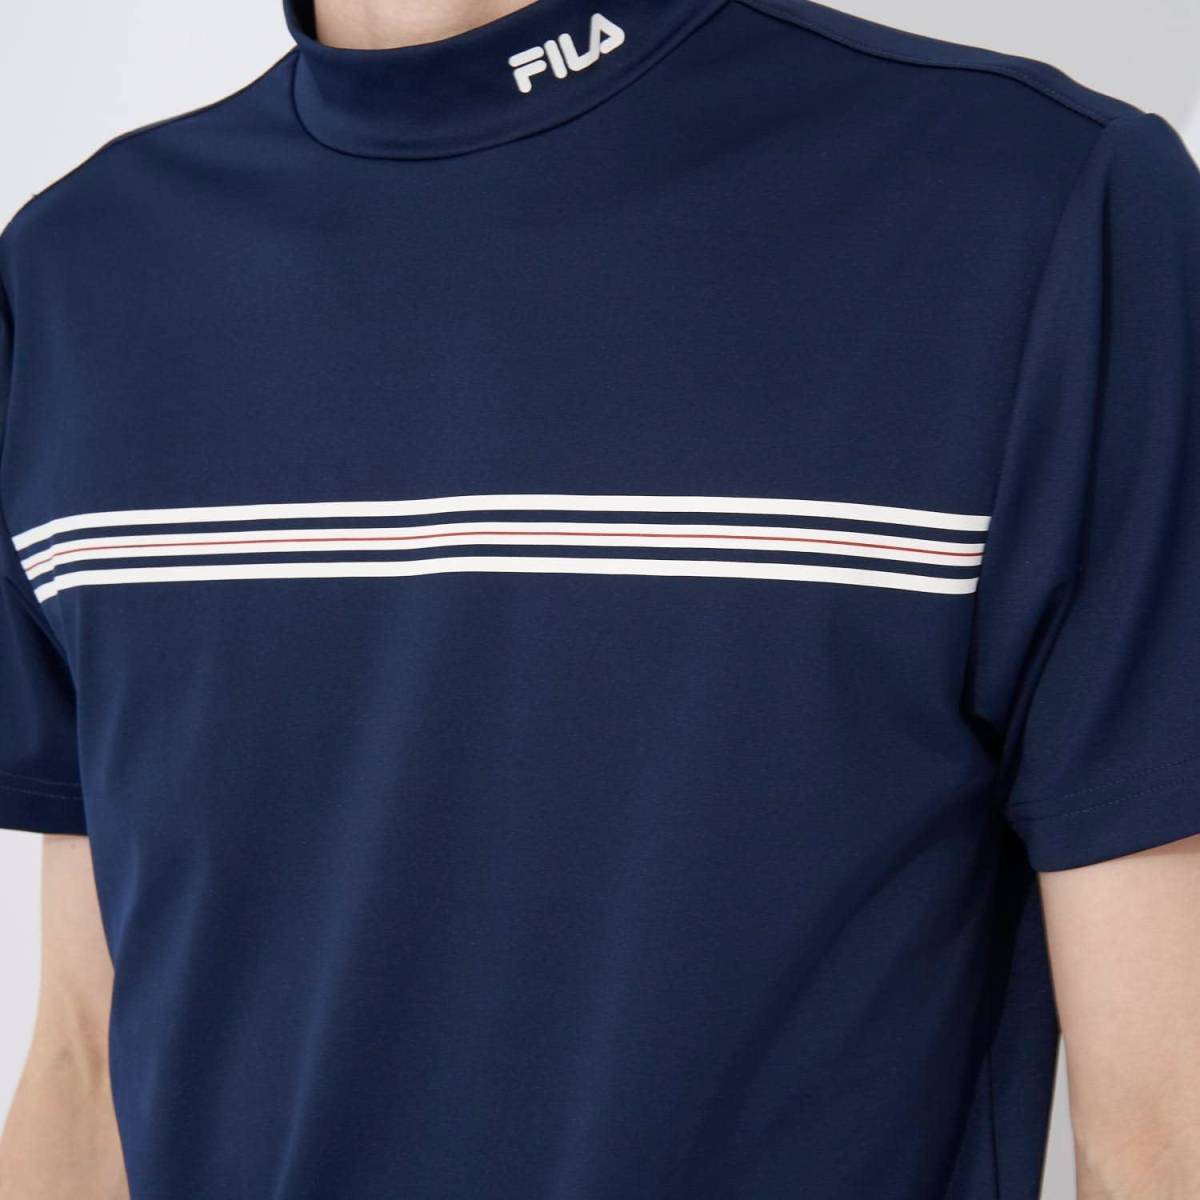 新品 フィラ ゴルフ 半袖 モックネック シャツ 3Lサイズ 紺 ネイビー 743-600 吸汗速乾 UVカット 接触冷感 税込7,590円 743600 メンズの画像4